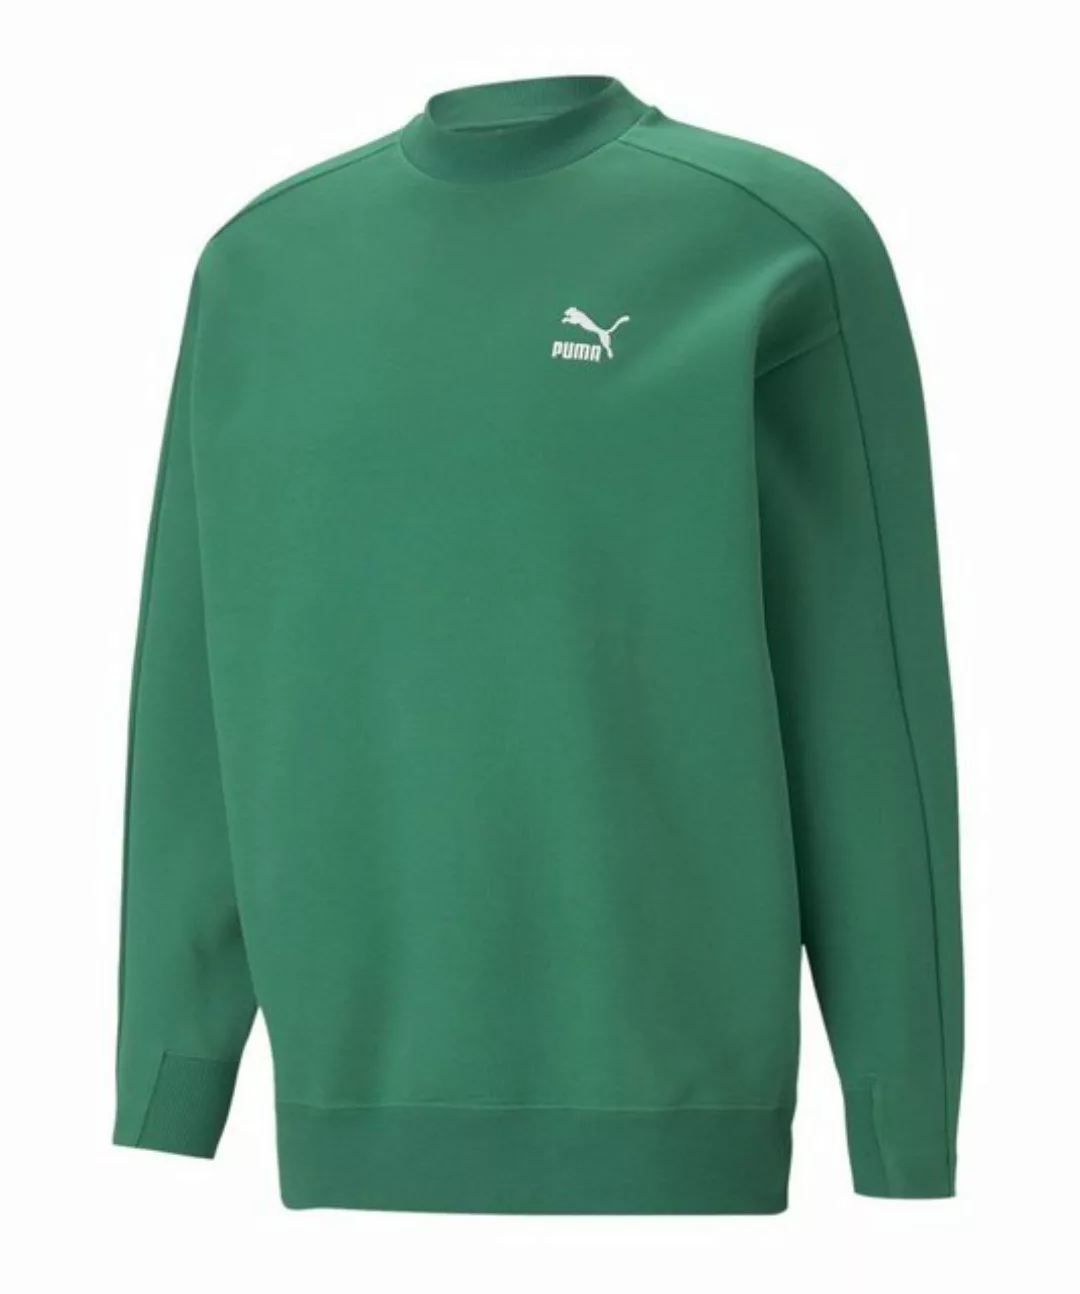 PUMA Sweatshirt T7 Mock Neck Crew Sweatshirt Beige günstig online kaufen